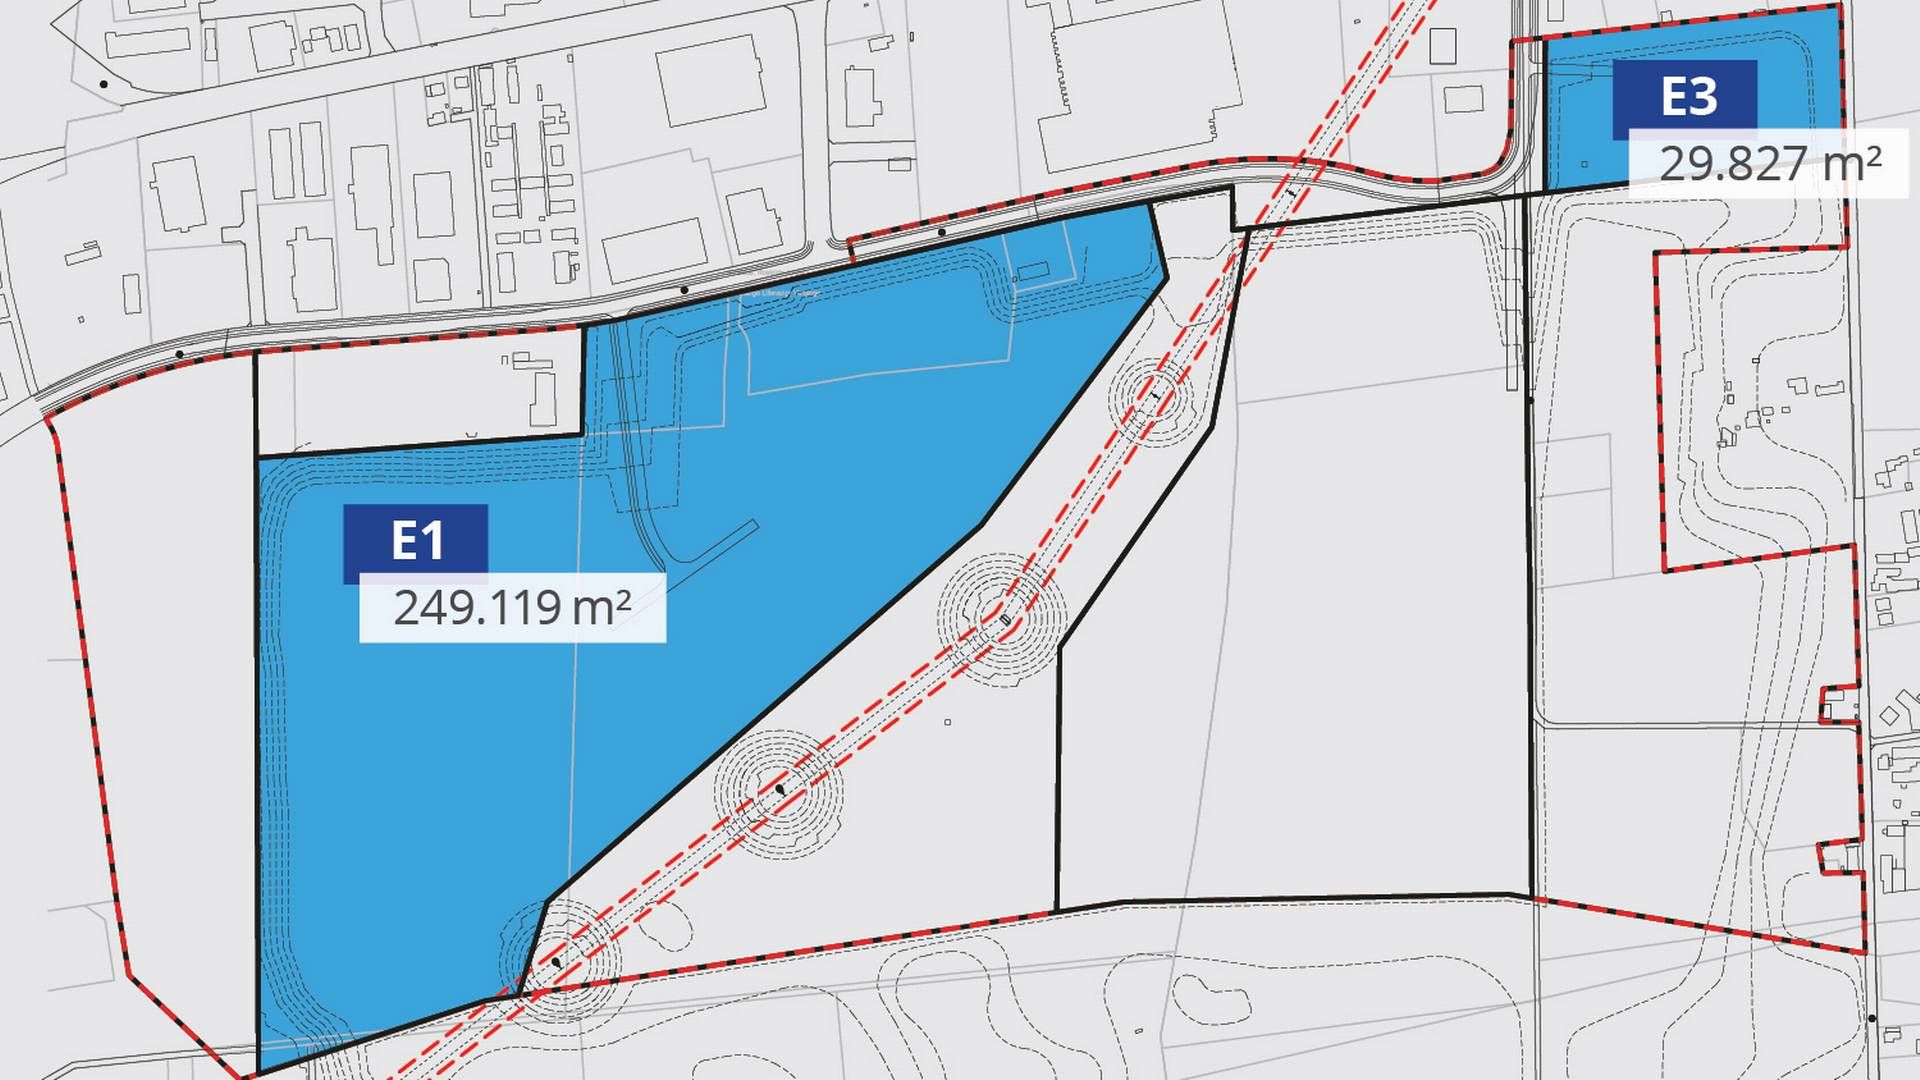 De to udviklingsområder markeret med blå sættes nu til salg hos erhvervsmægleren Colliers. | Foto: PR